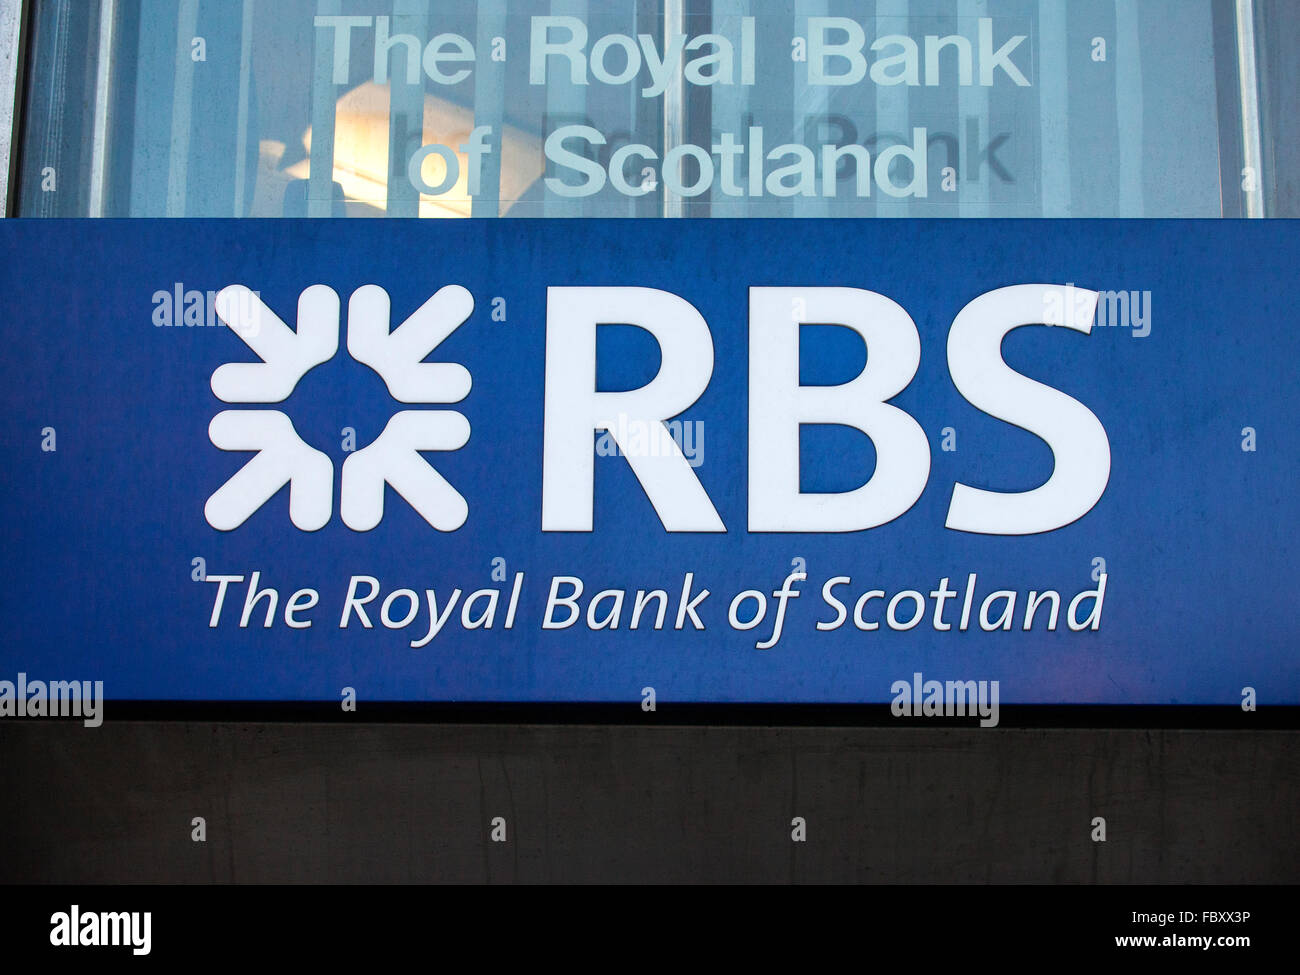 Londres, Royaume-Uni - 19 janvier 2016 : un signe pour une sortie de la Royal Bank of Scotland dans le centre de Londres le 19 janvier 2016. Banque D'Images